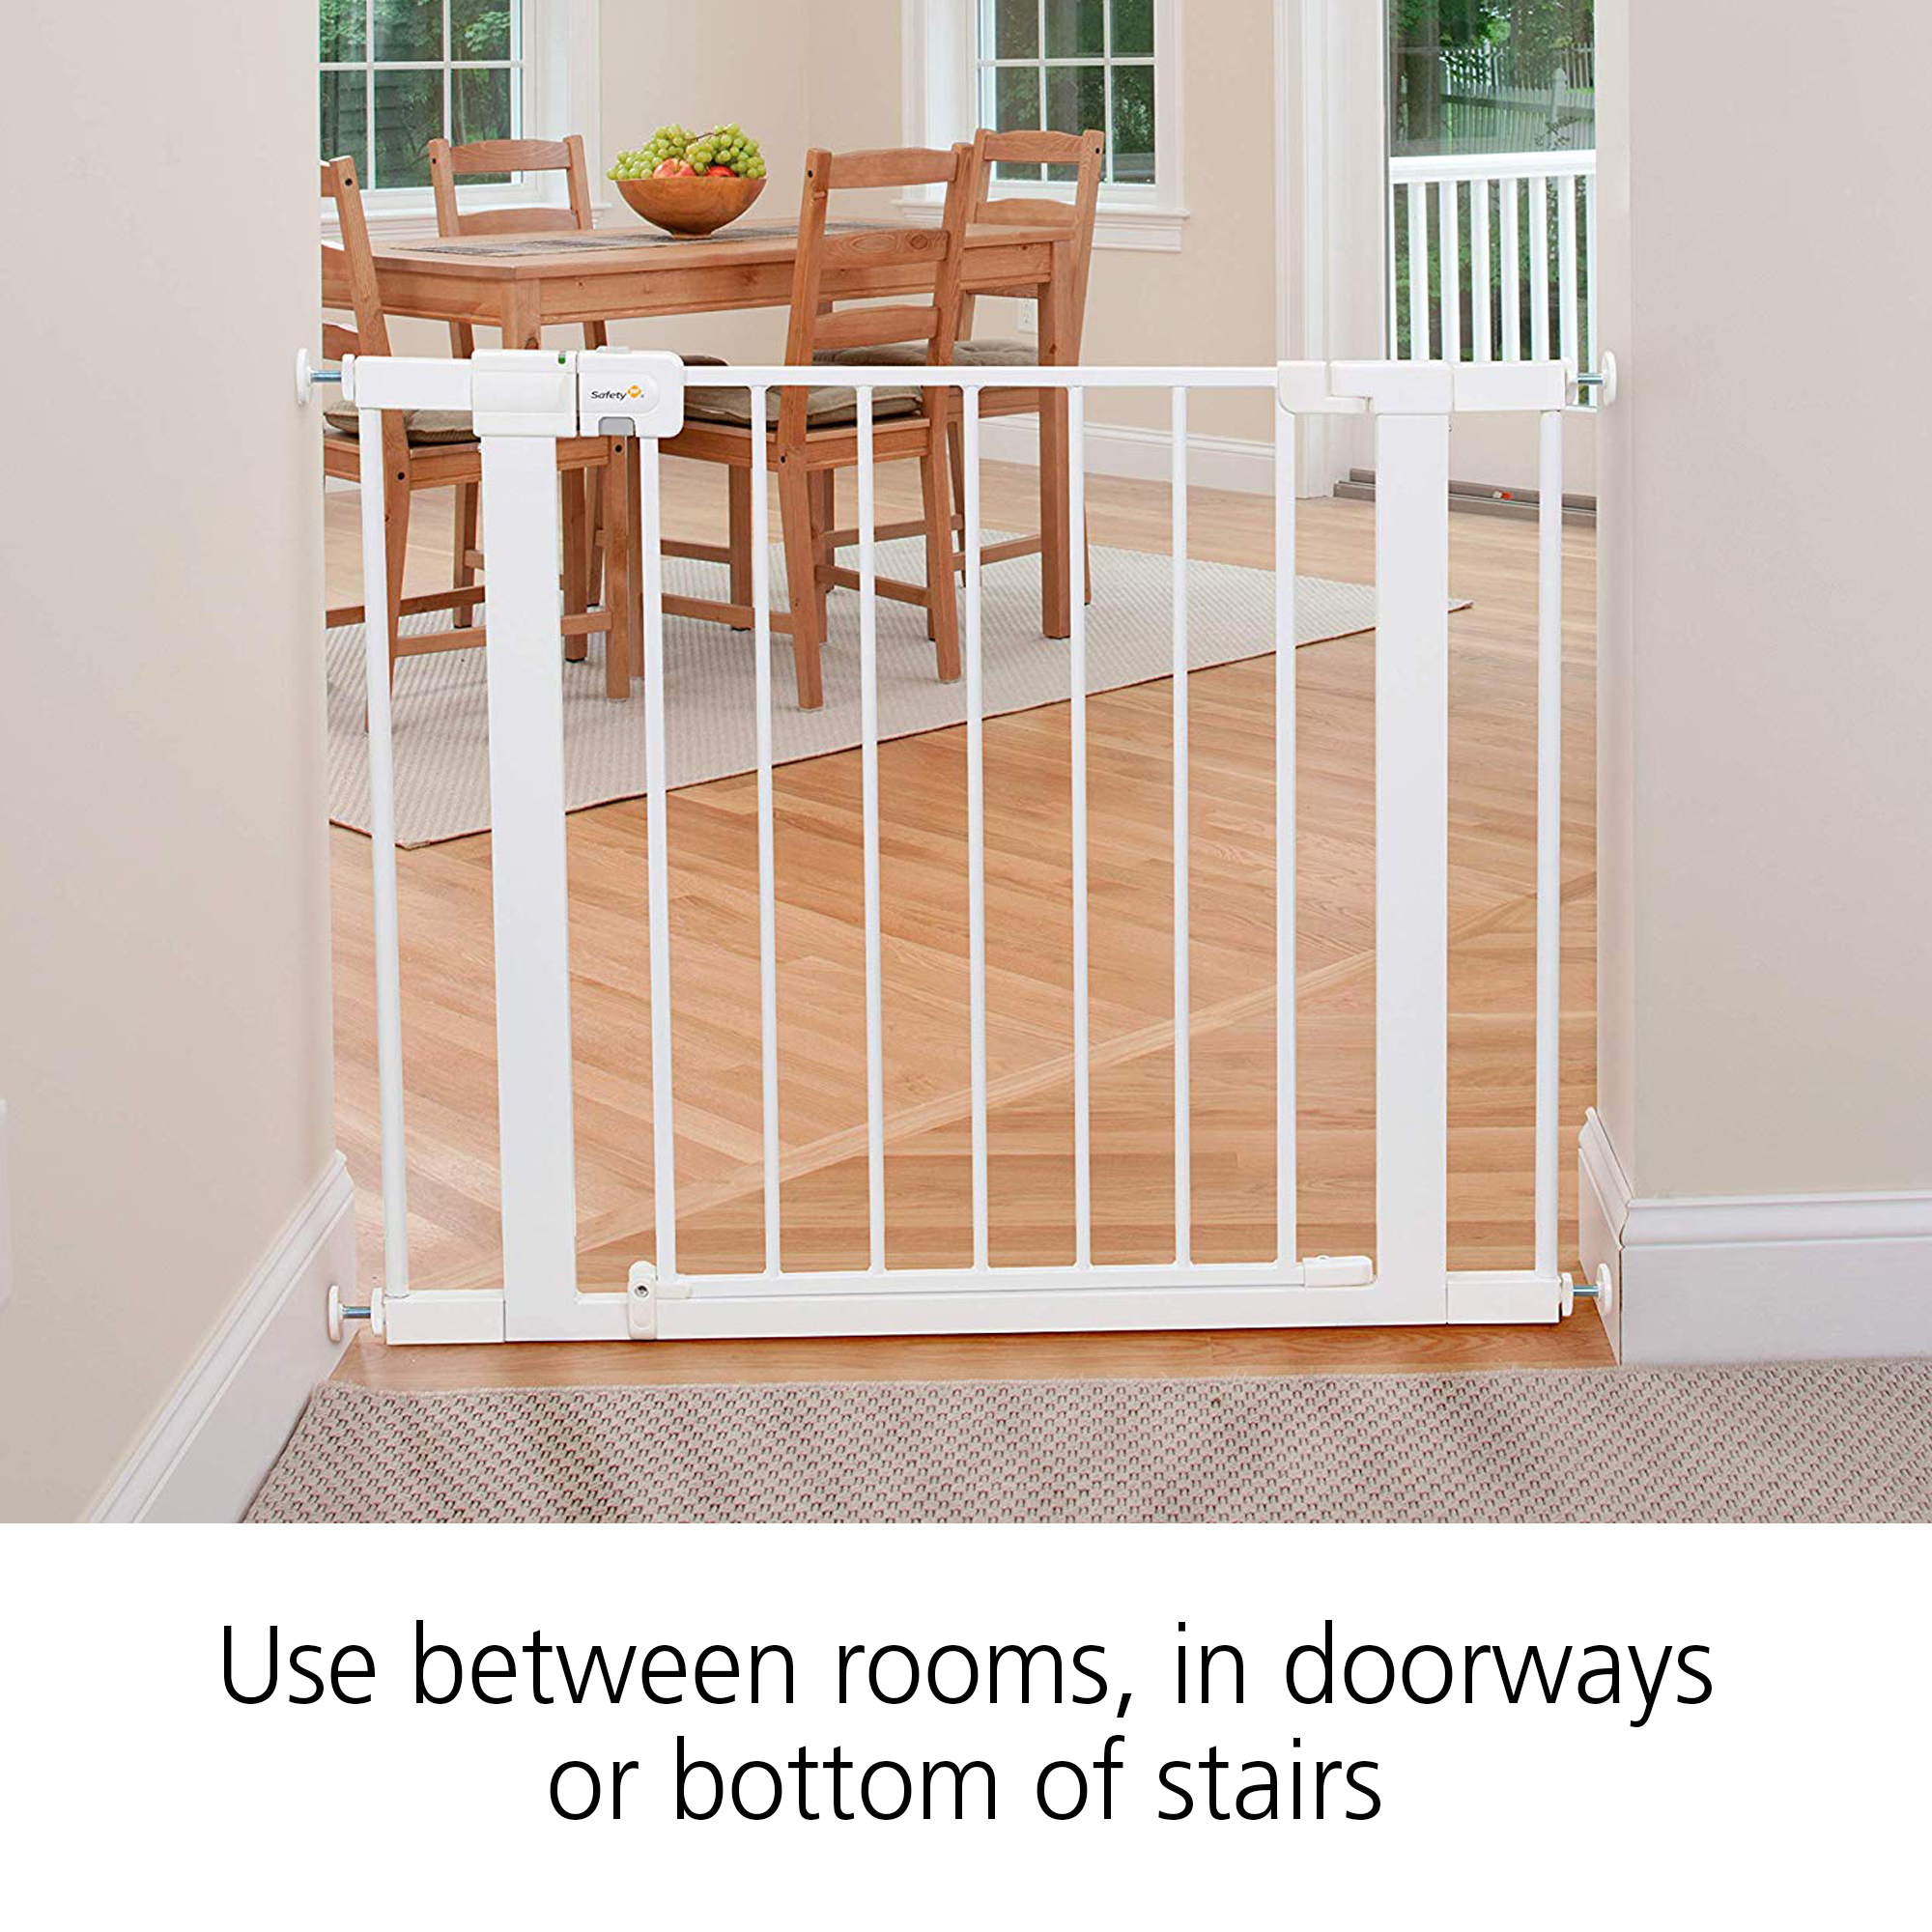 Use between rooms, in doorways or bottom of stairs